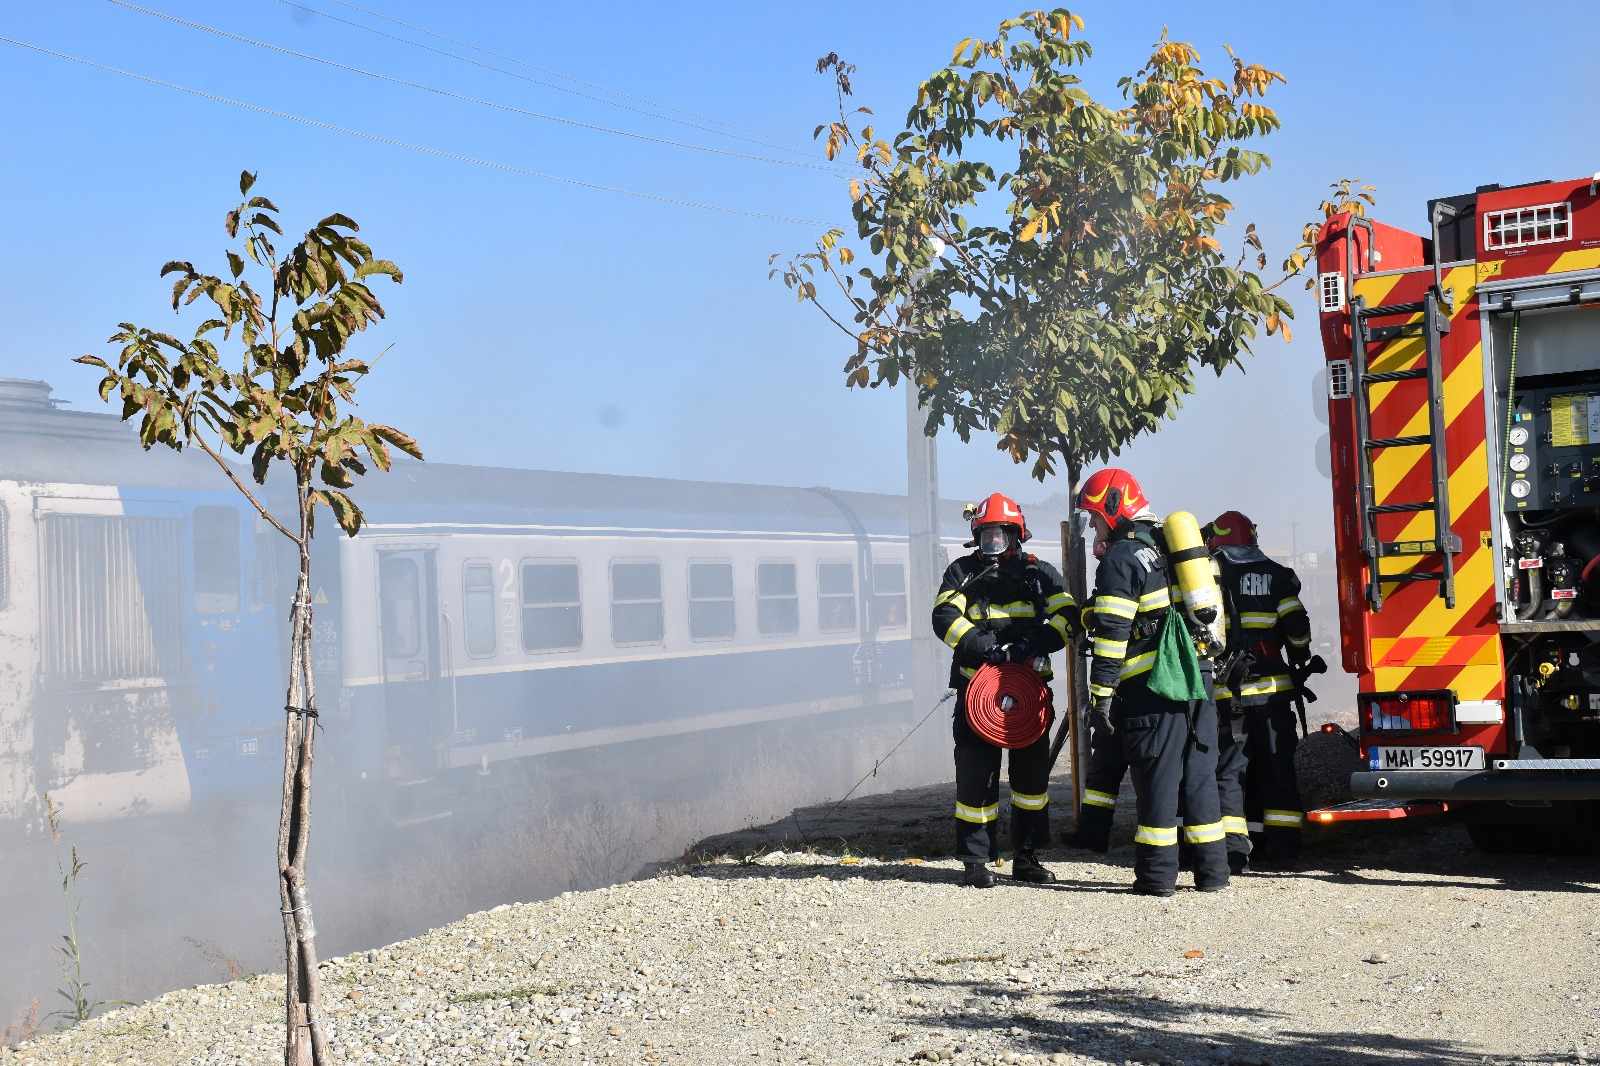 VIDEO. Accident feroviar în Piatra-Olt. 17 victime transportate la spital, după impactul între două trenuri (Exerciţiu ISU Olt)